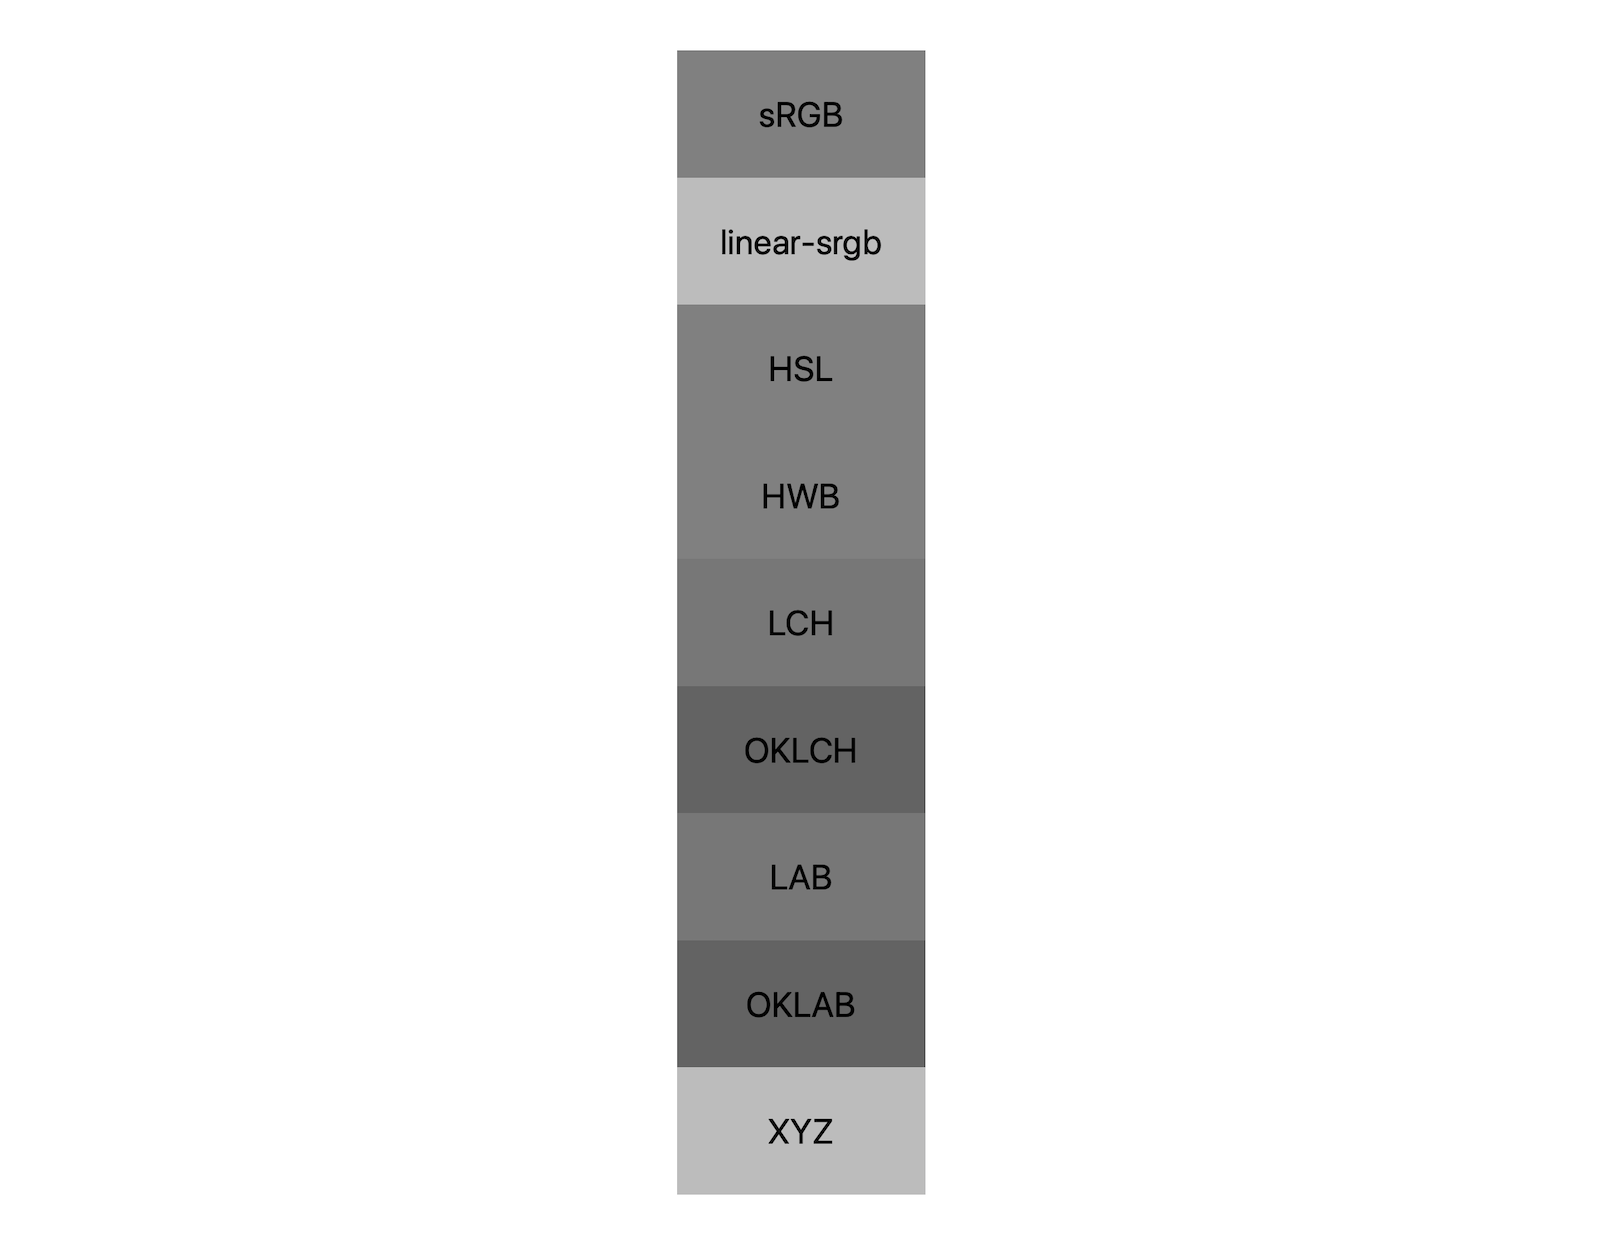 सात अलग-अलग कलर स्पेस (एसआरजीबी, लीनियर-एसआरजीबी, lch, oklch, lab, oklab, xyz) हैं. इनमें से हर एक, ब्लैक और व्हाइट को मिलाकर नतीजे दिखाते हैं. इसमें करीब पांच अलग-अलग शेड दिखाए गए हैं. इनसे पता चलता है कि हर कलर स्पेस का रंग ग्रे रंग से अलग होगा.